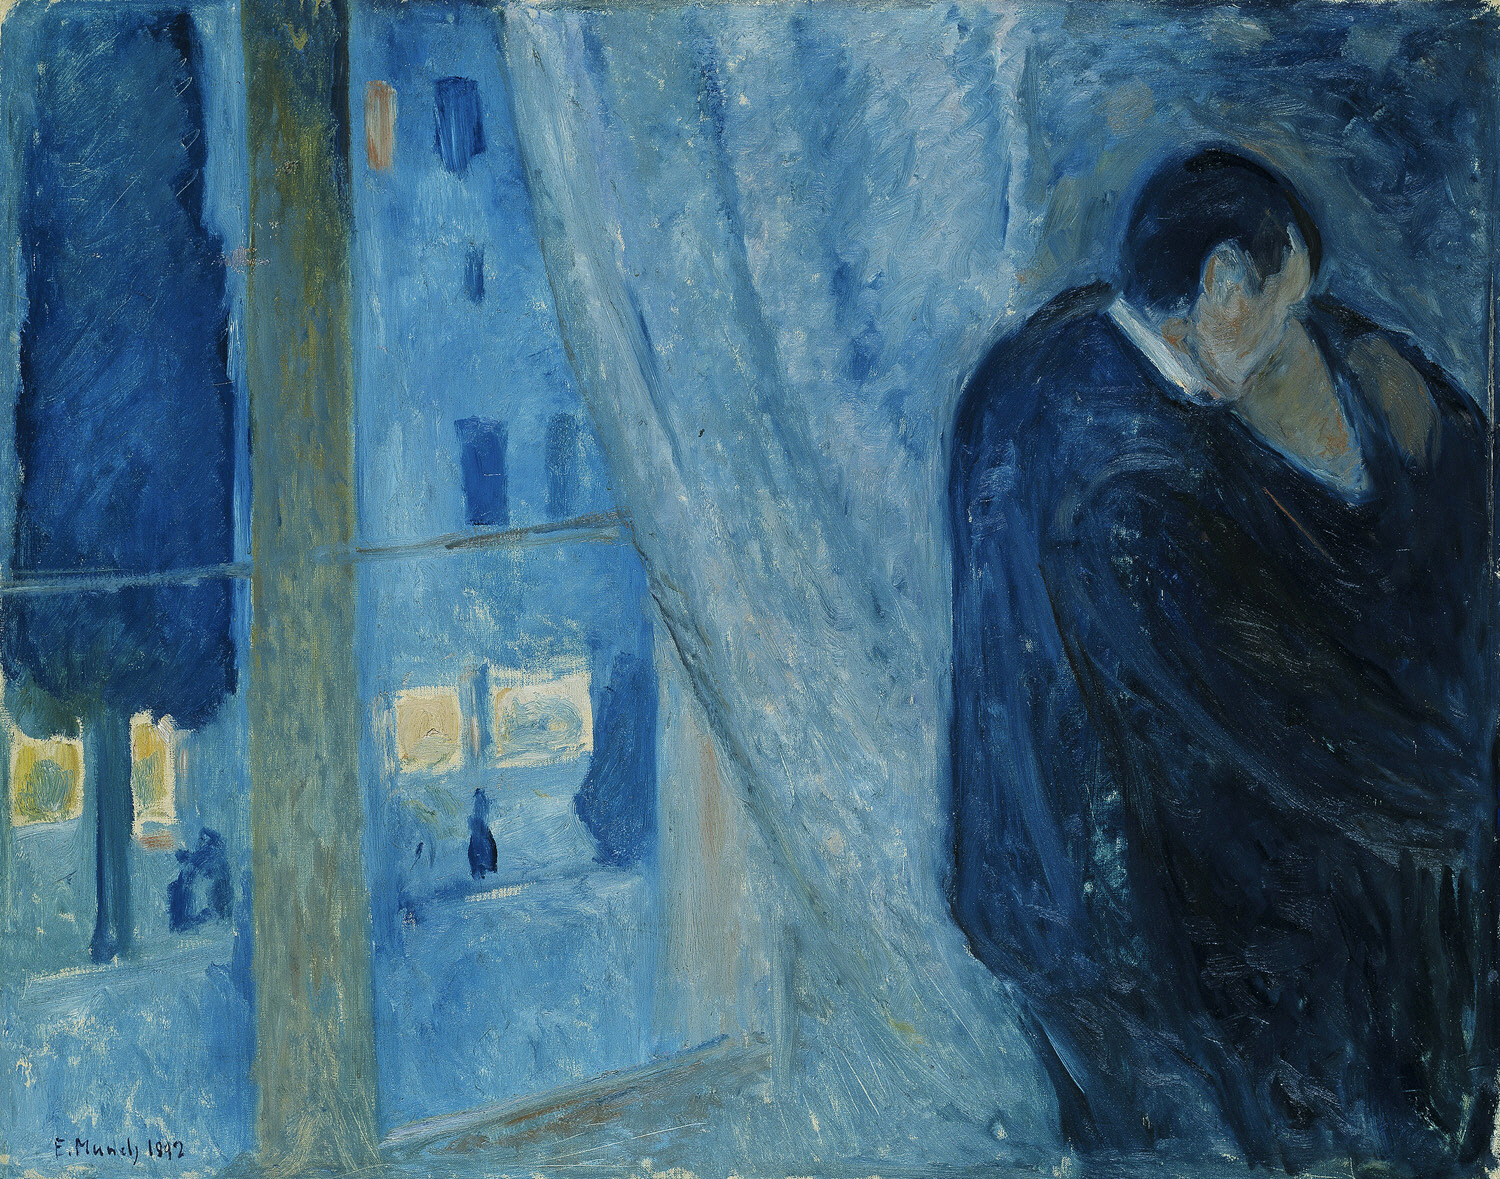 Поцелуй у окна by Edvard Munch - 1892 - 73 x 92 см 